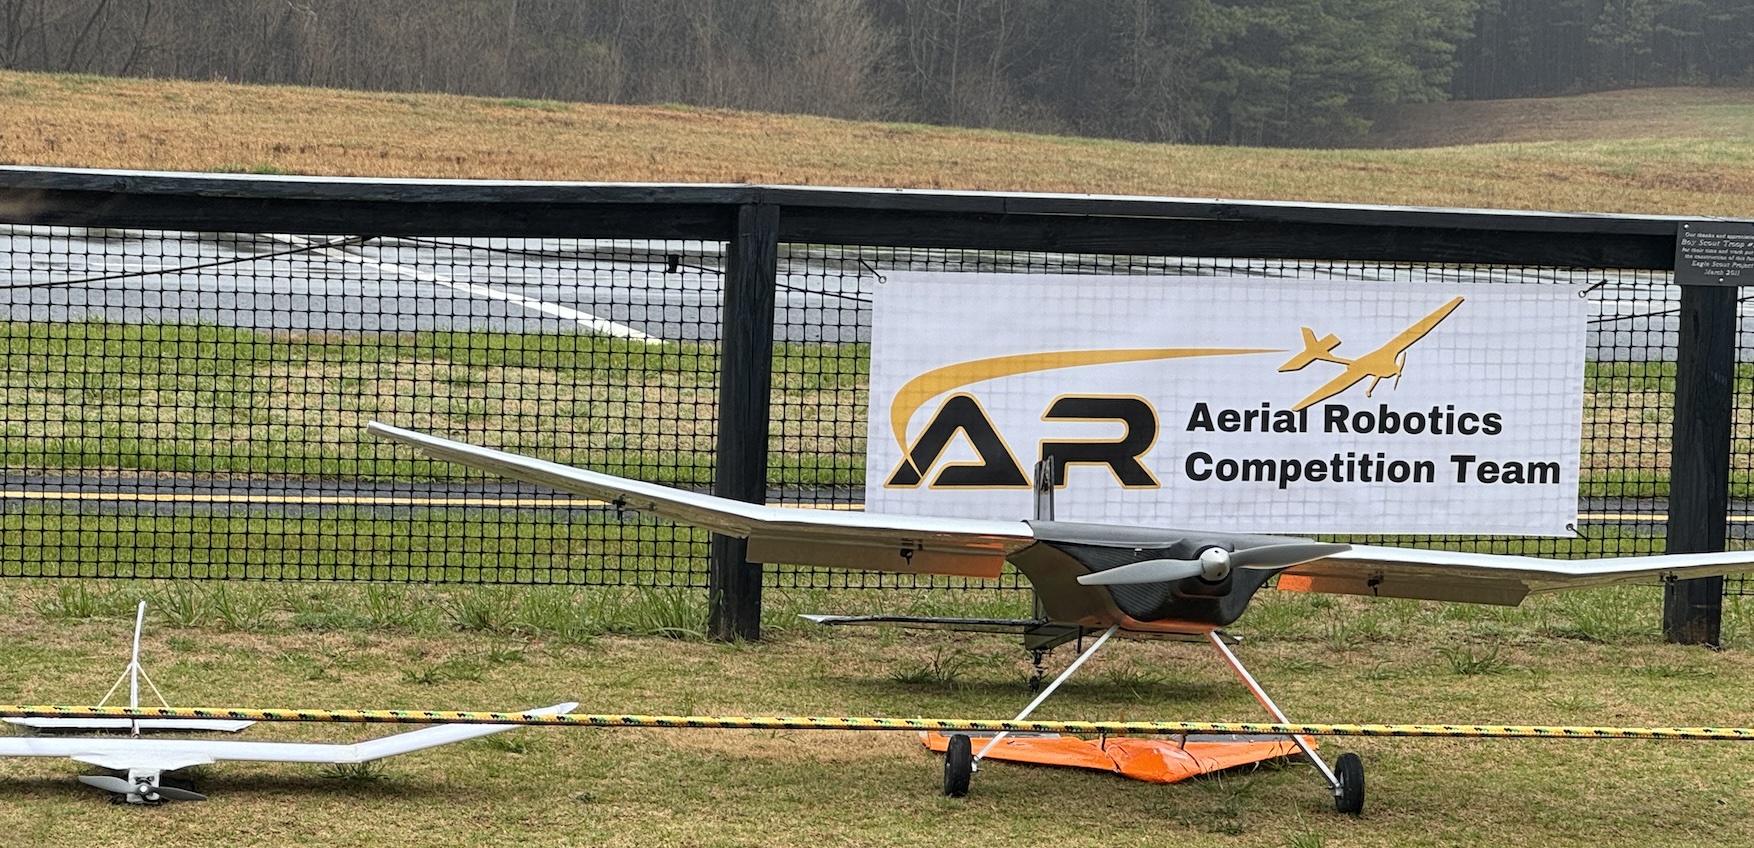 Aerial Robotics Competition Team